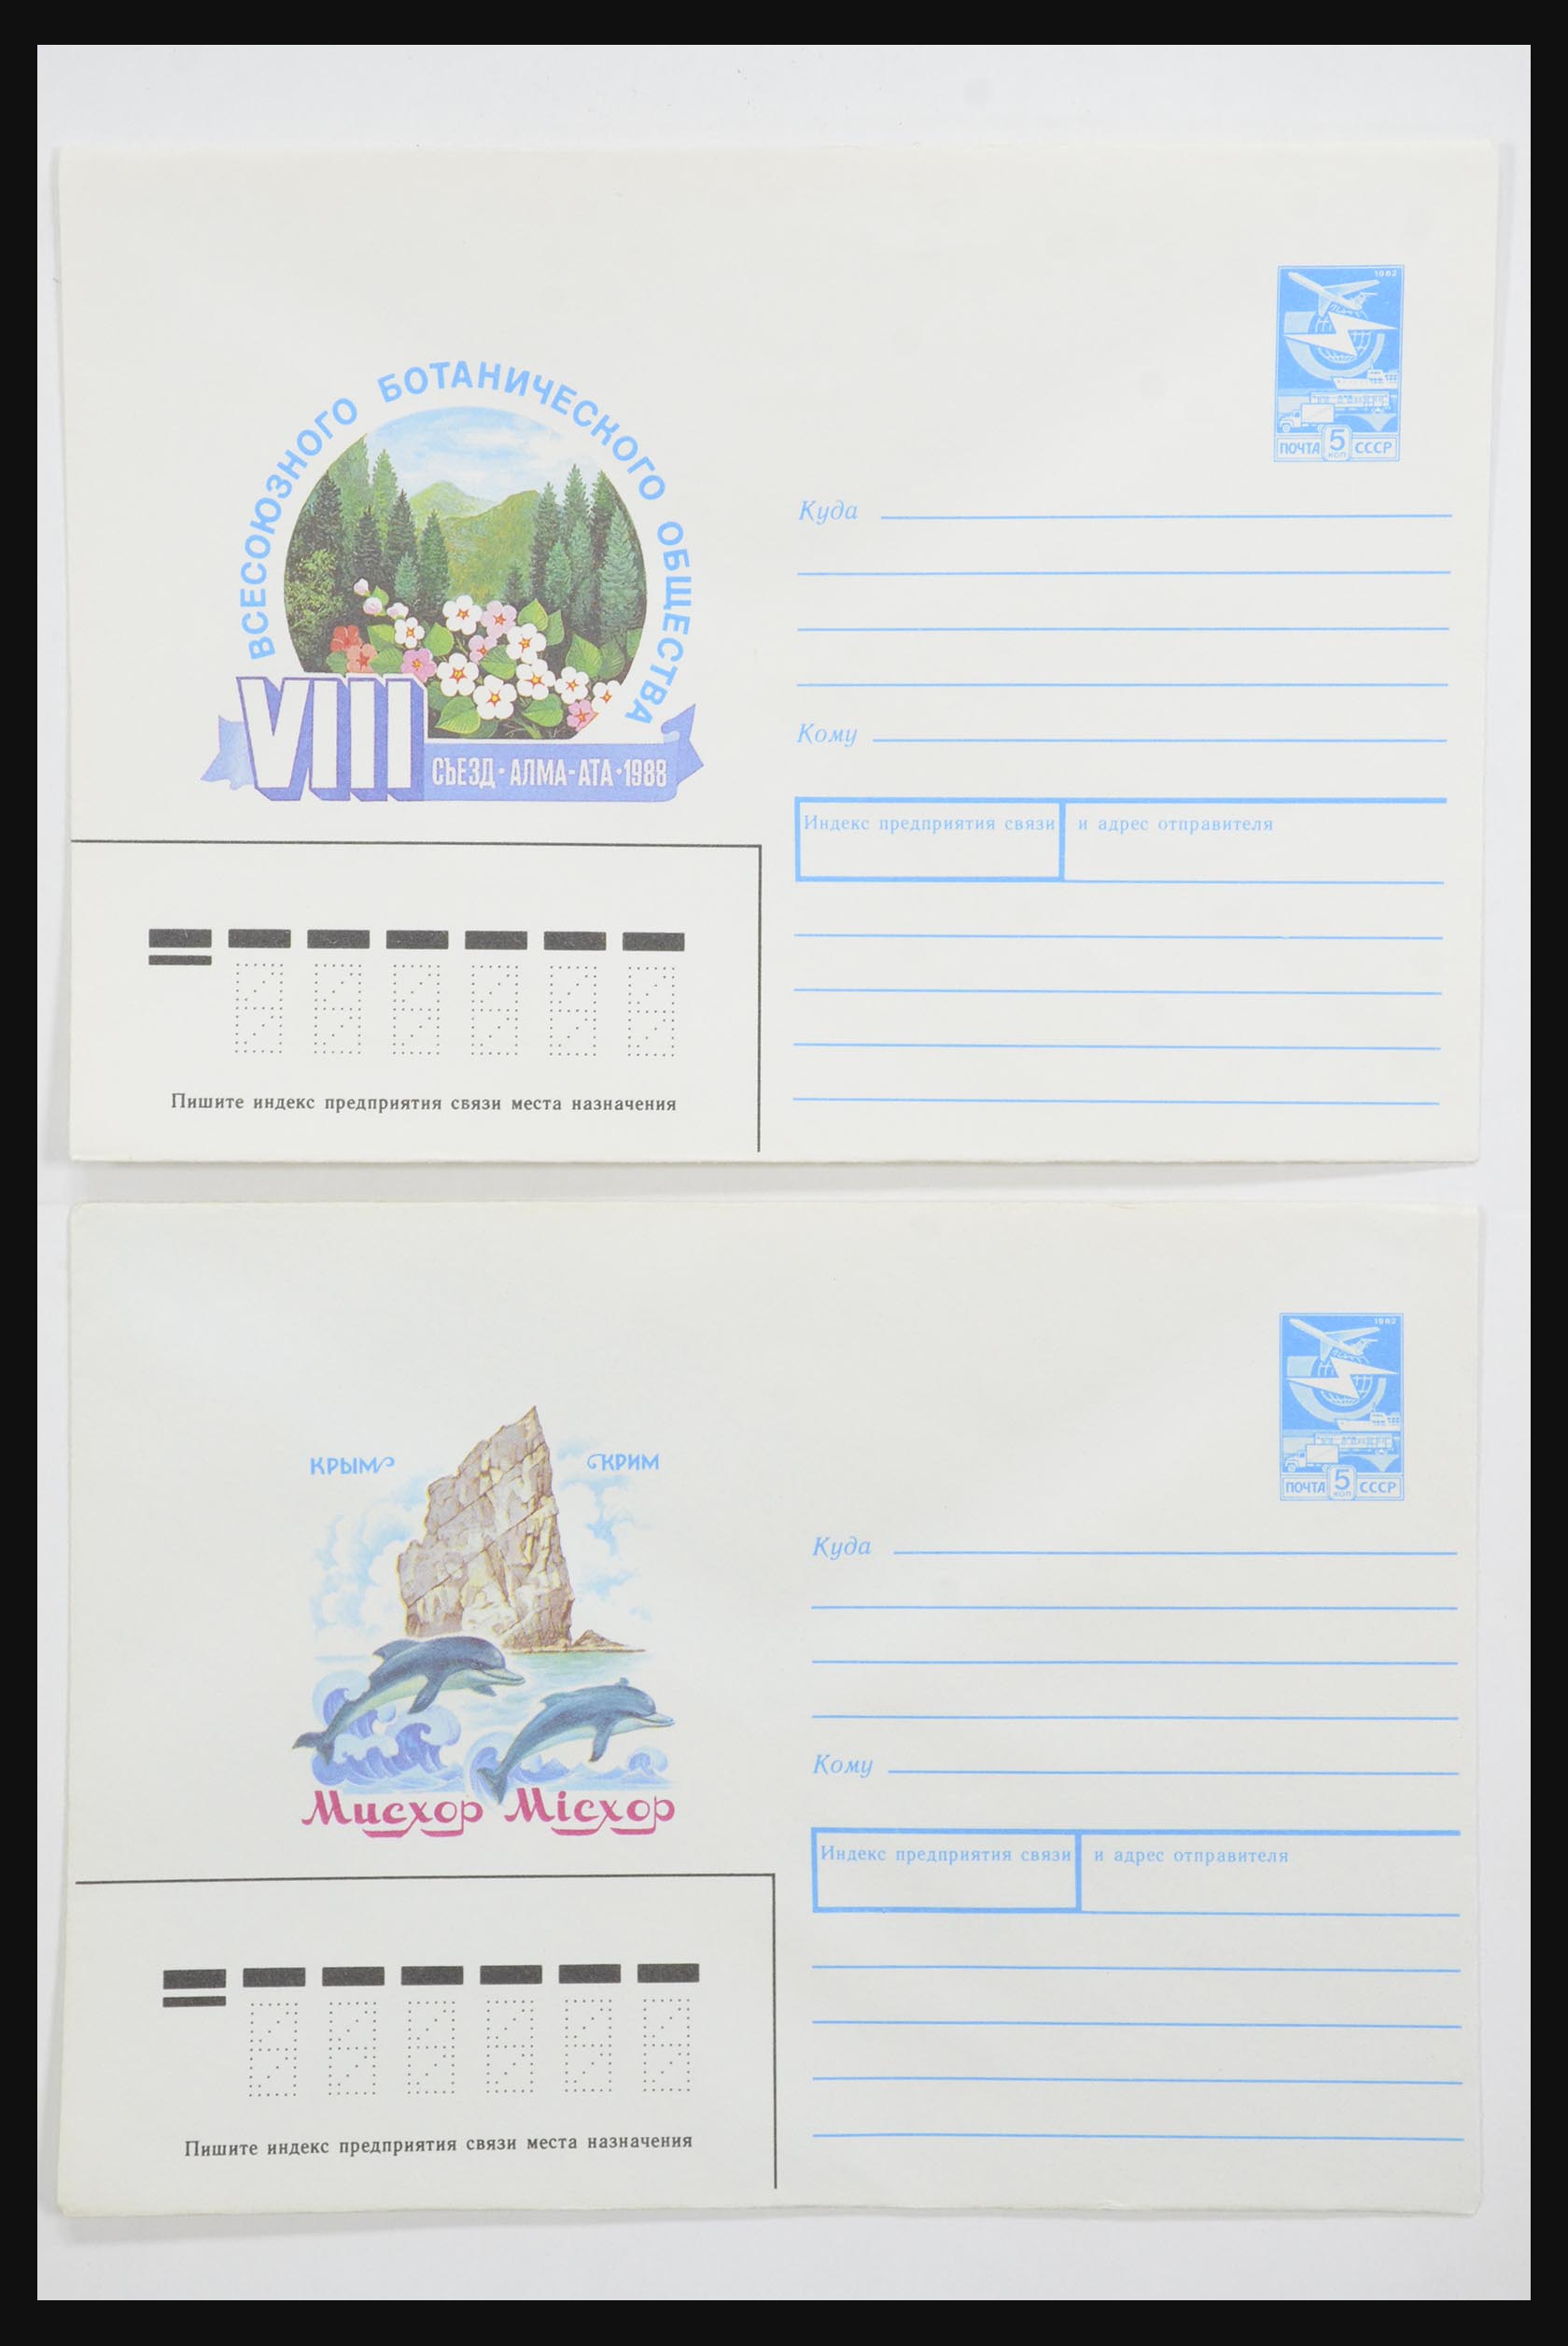 31928 0052 - 31928 Oost Europa brieven jaren 60/90.